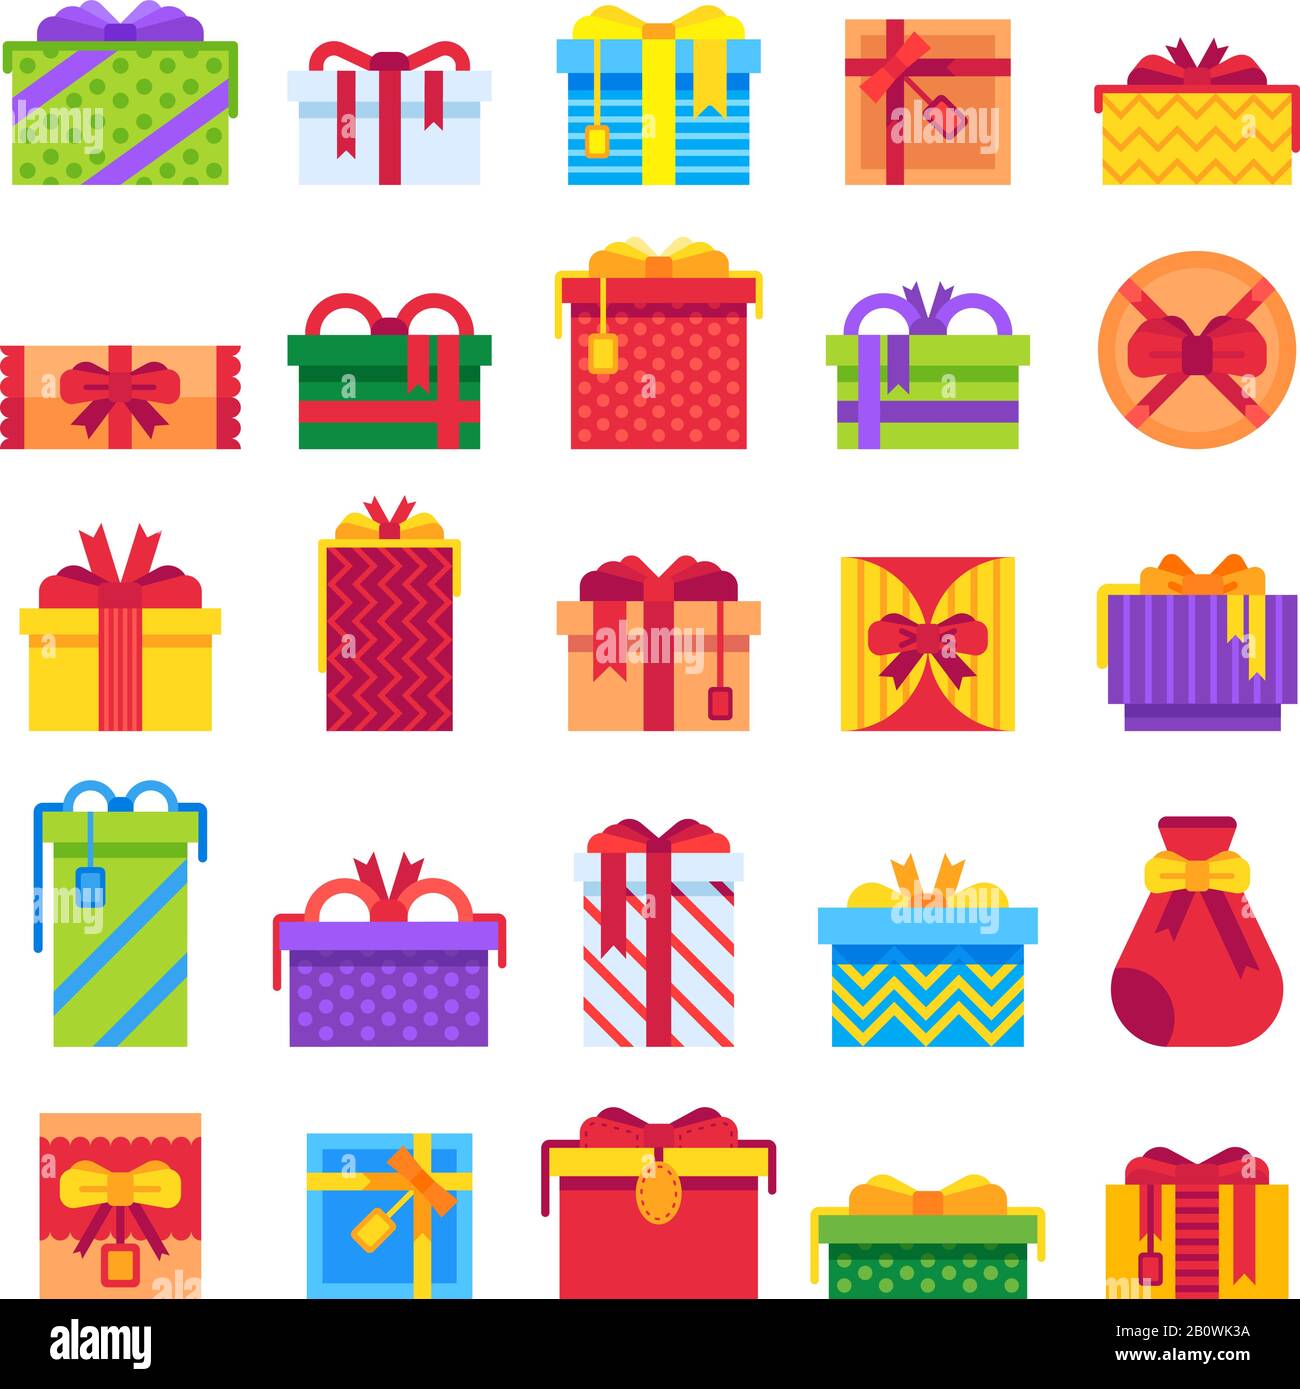 Weihnachtsgeschenke. Winterurlaubsüberraschung im Geschenkkarton. Xmas präsentiert isolierte Vektor-Flat-Illustrationssets Stock Vektor